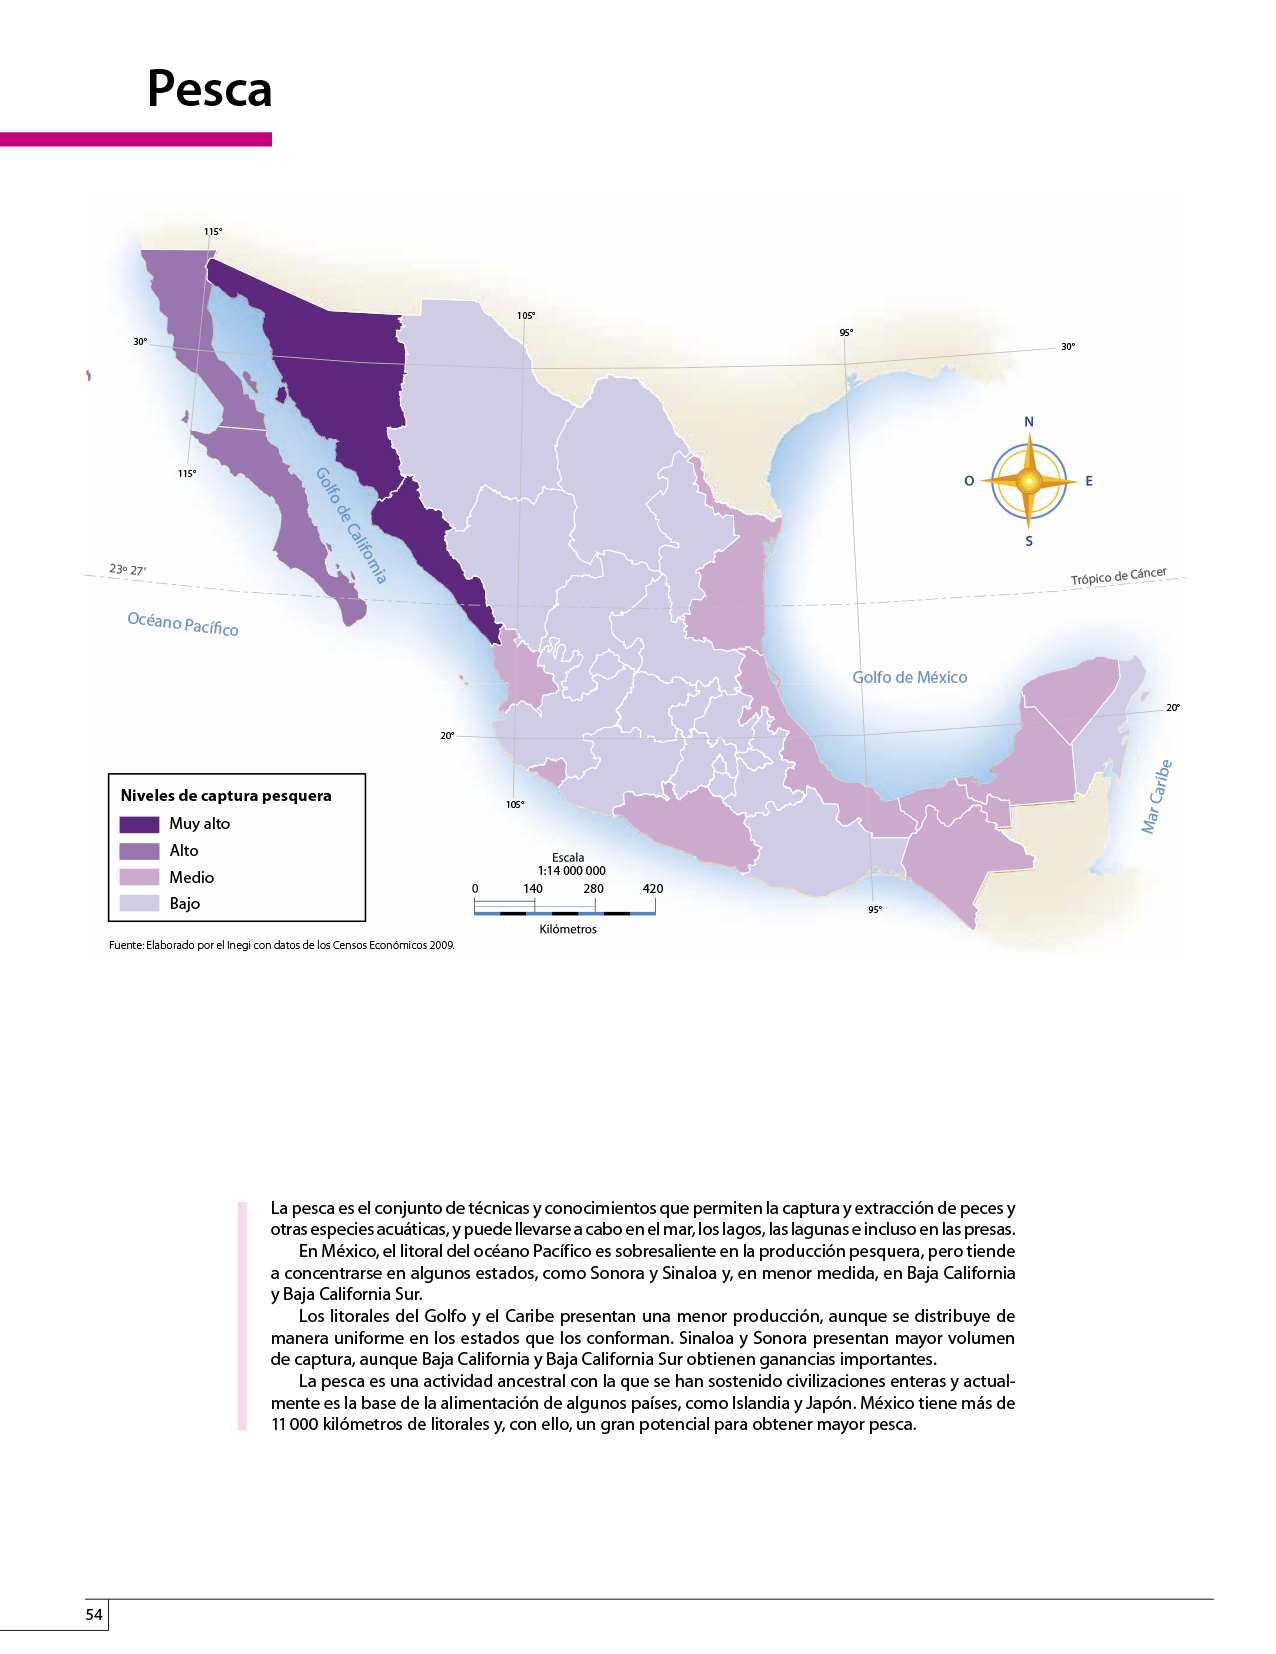 Atlas de México cuarto grado 2017-2018 - Página 54 de 130 - Libros de